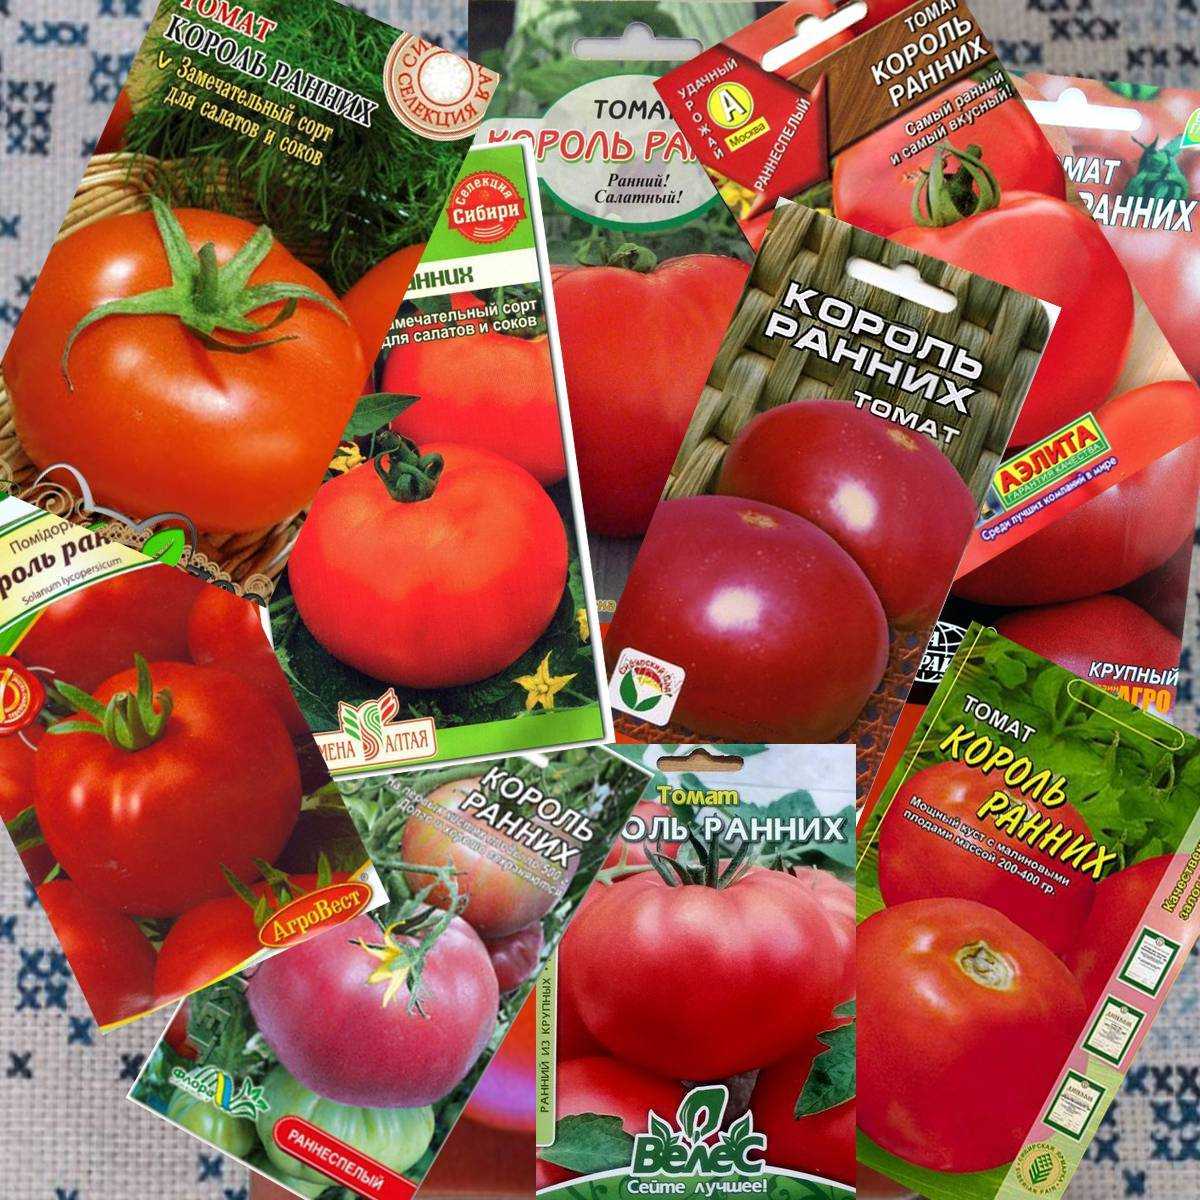 Лучшие сорта томата для подмосковья для теплиц и открытого грунта